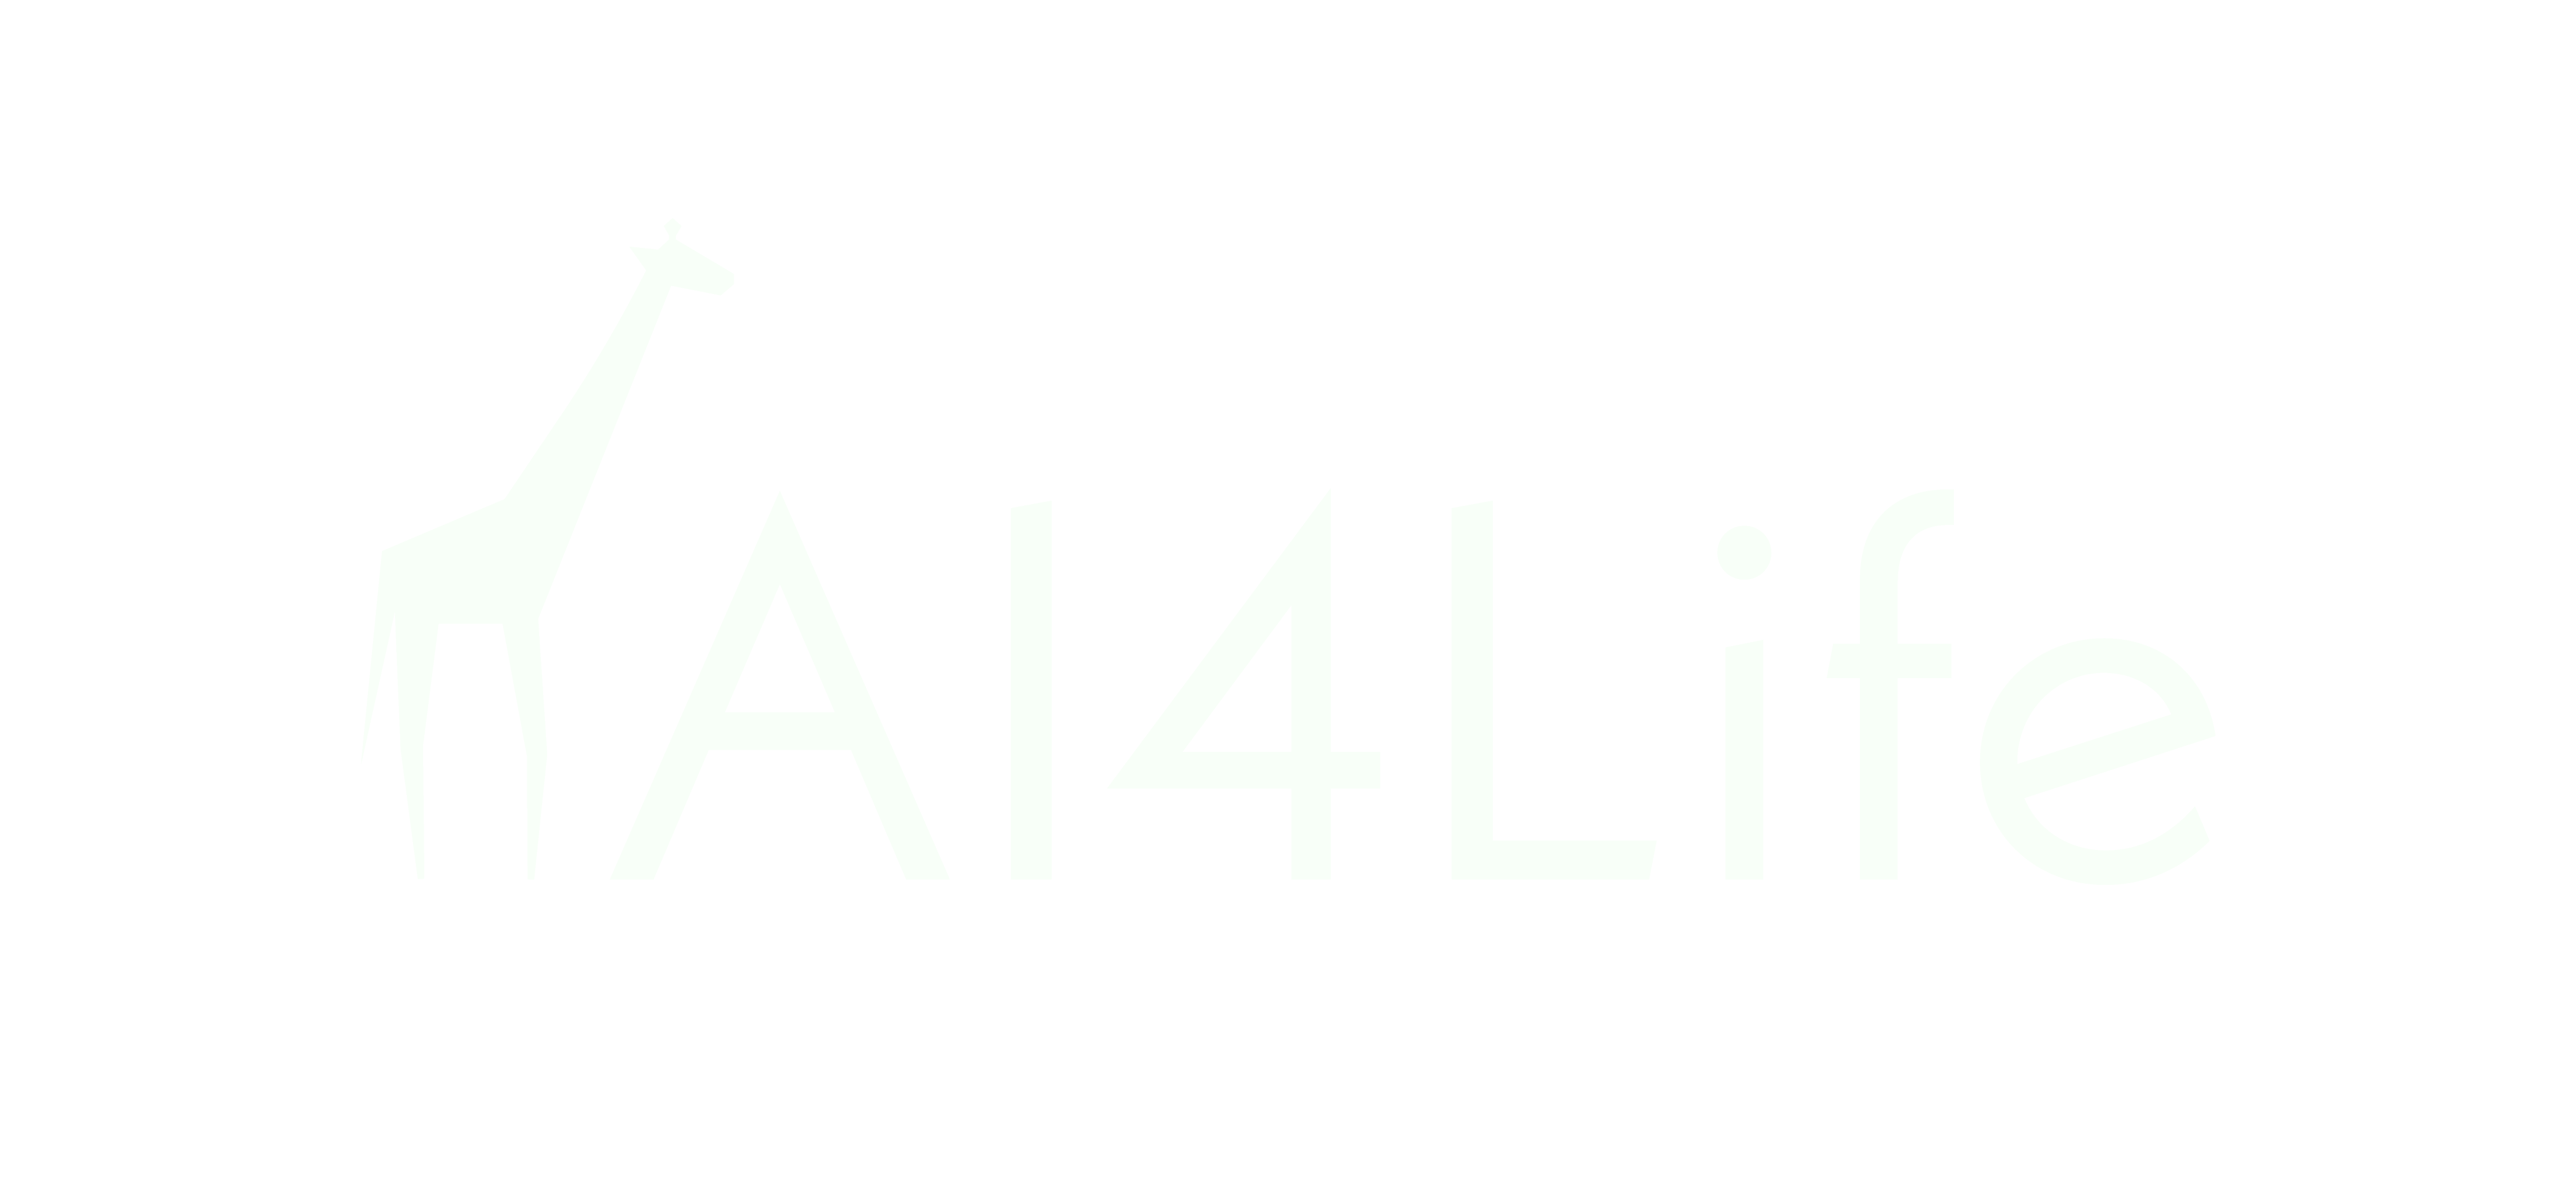 Giraffe icon. AI 4 life